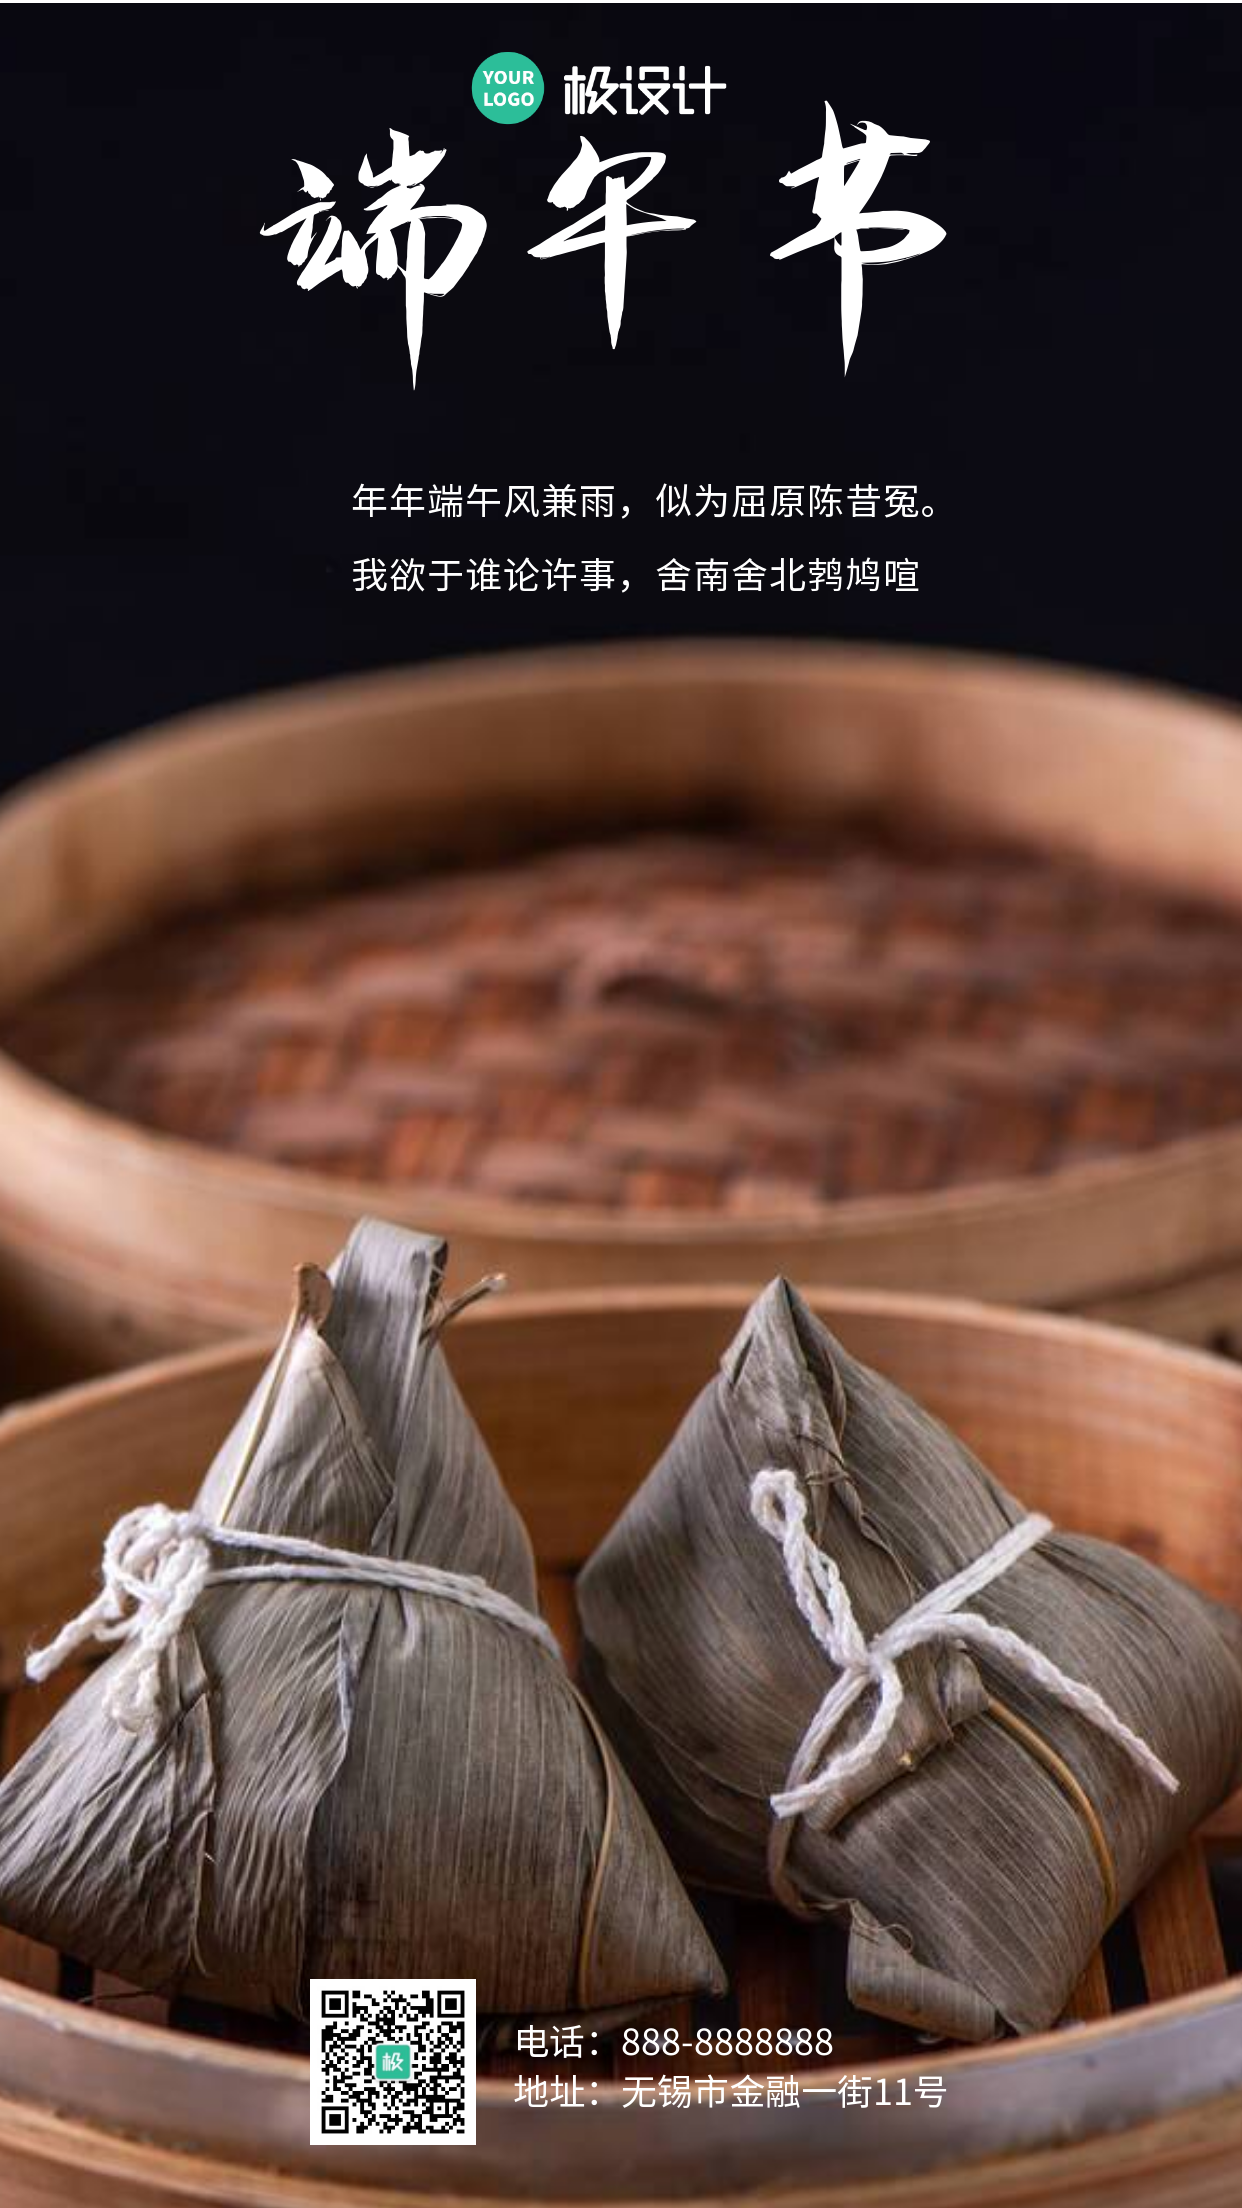 中国传统节日之端午节手机摄影图海报